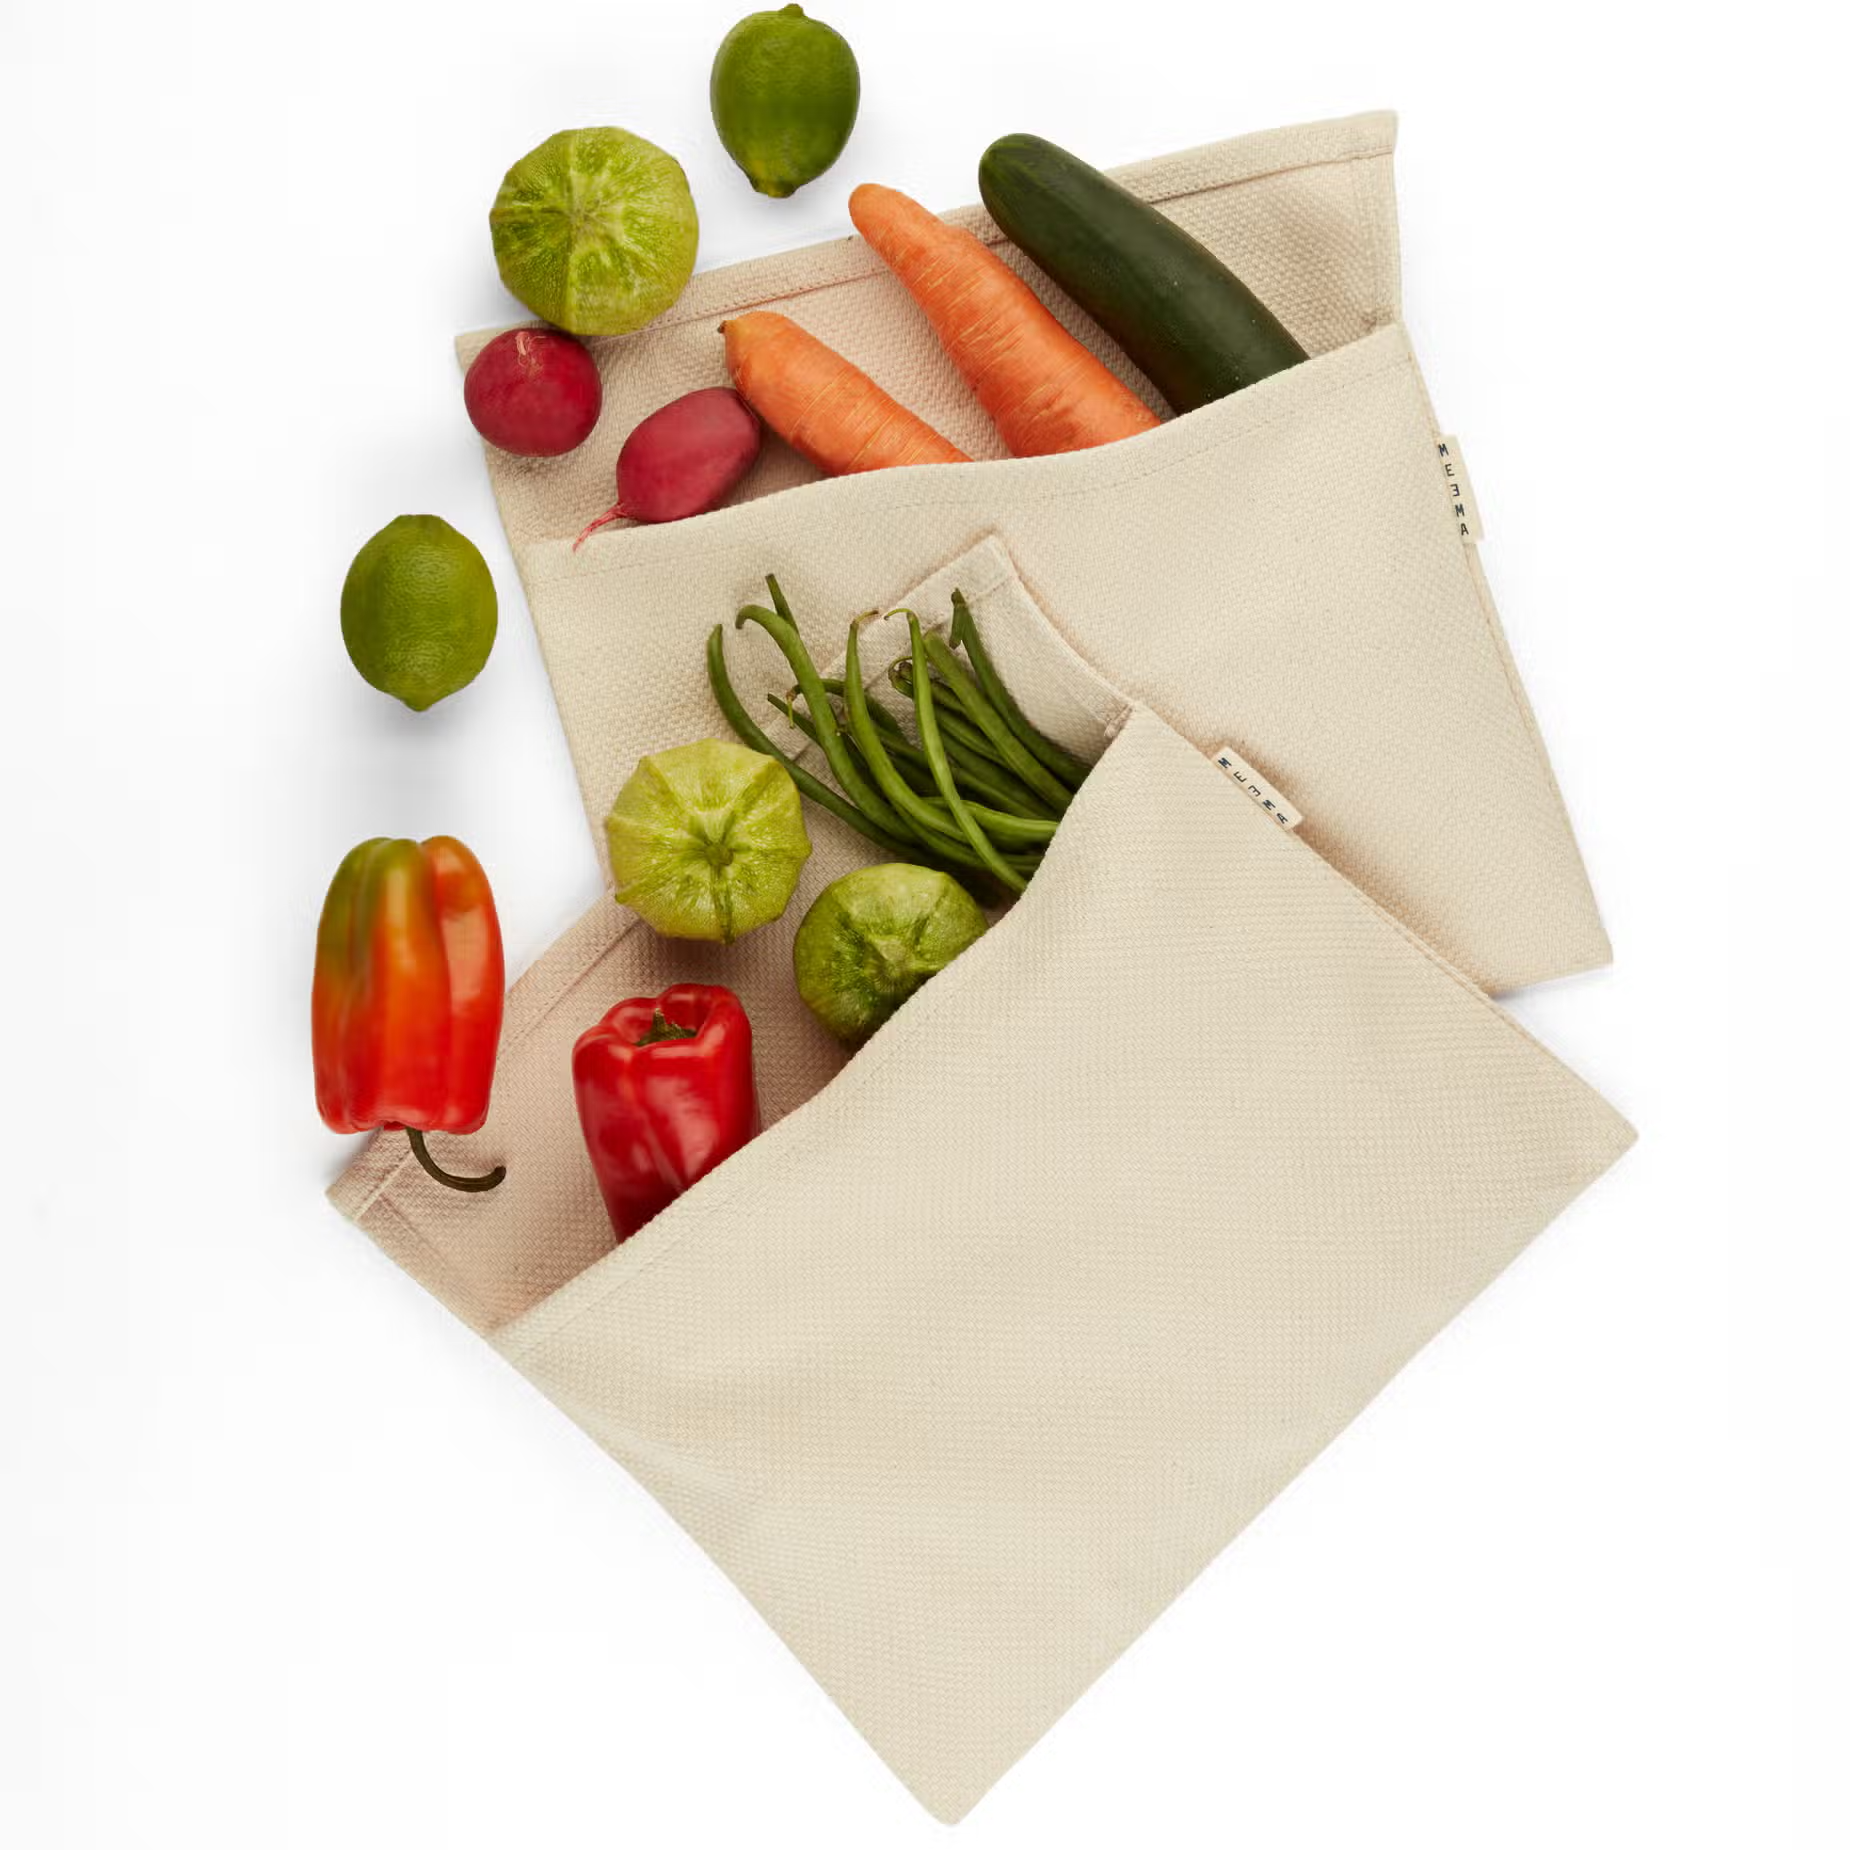 Vegetable Crisper Bags (Set of 2)